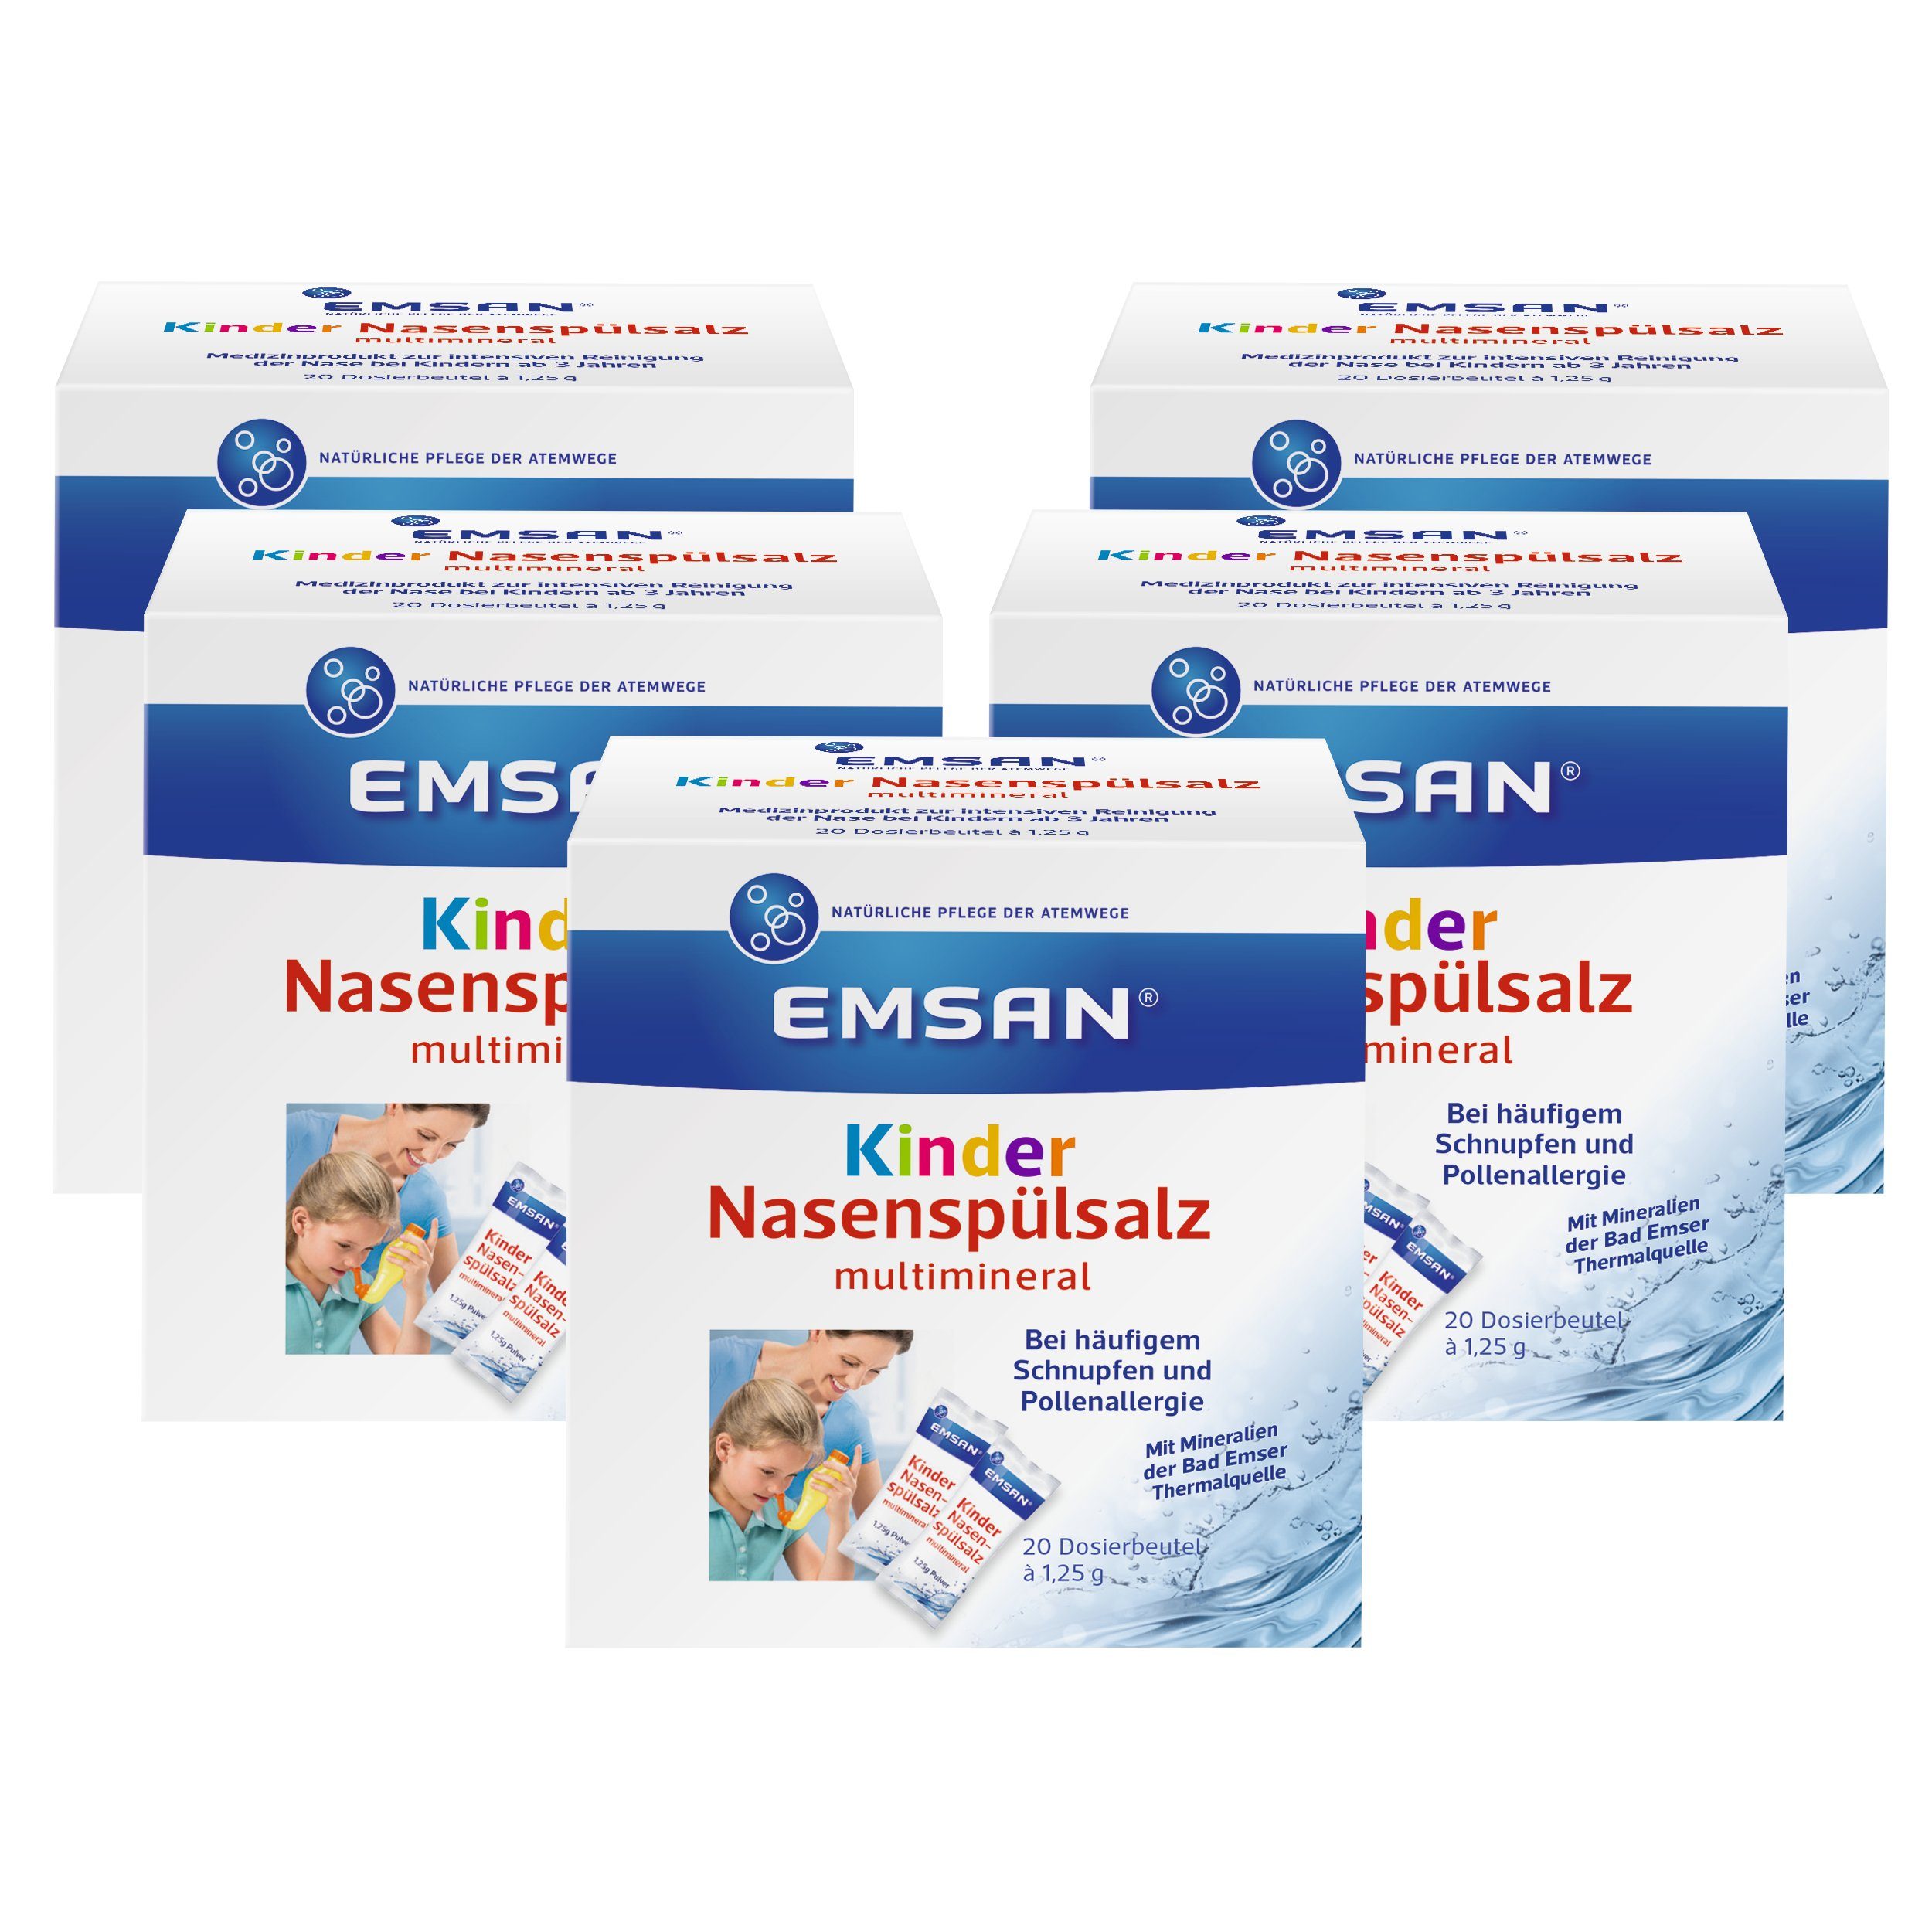 EMSAN Nasensauger-Ersatzteile Kindernasenspülsalz multimineral, 5 x 20 Beutel, zur Nasendusche bei Schnupfen und Pollenallergie